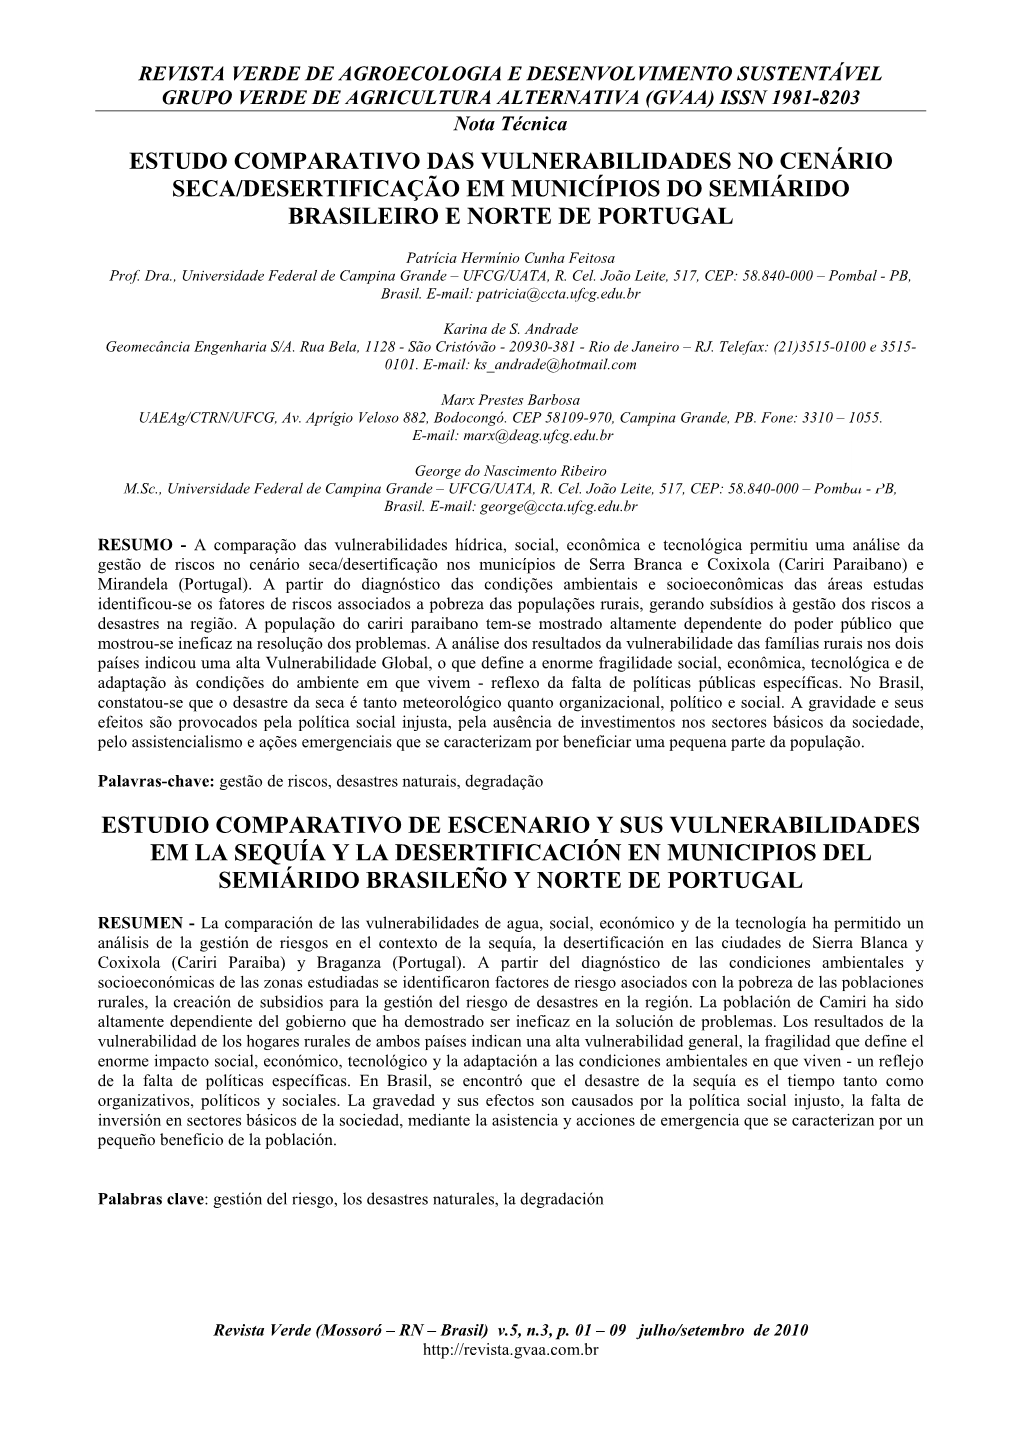 Estudo Comparativo Das Vulnerabilidades No Cenário Seca/Desertificação Em Municípios Do Semiárido Brasileiro E Norte De Portugal